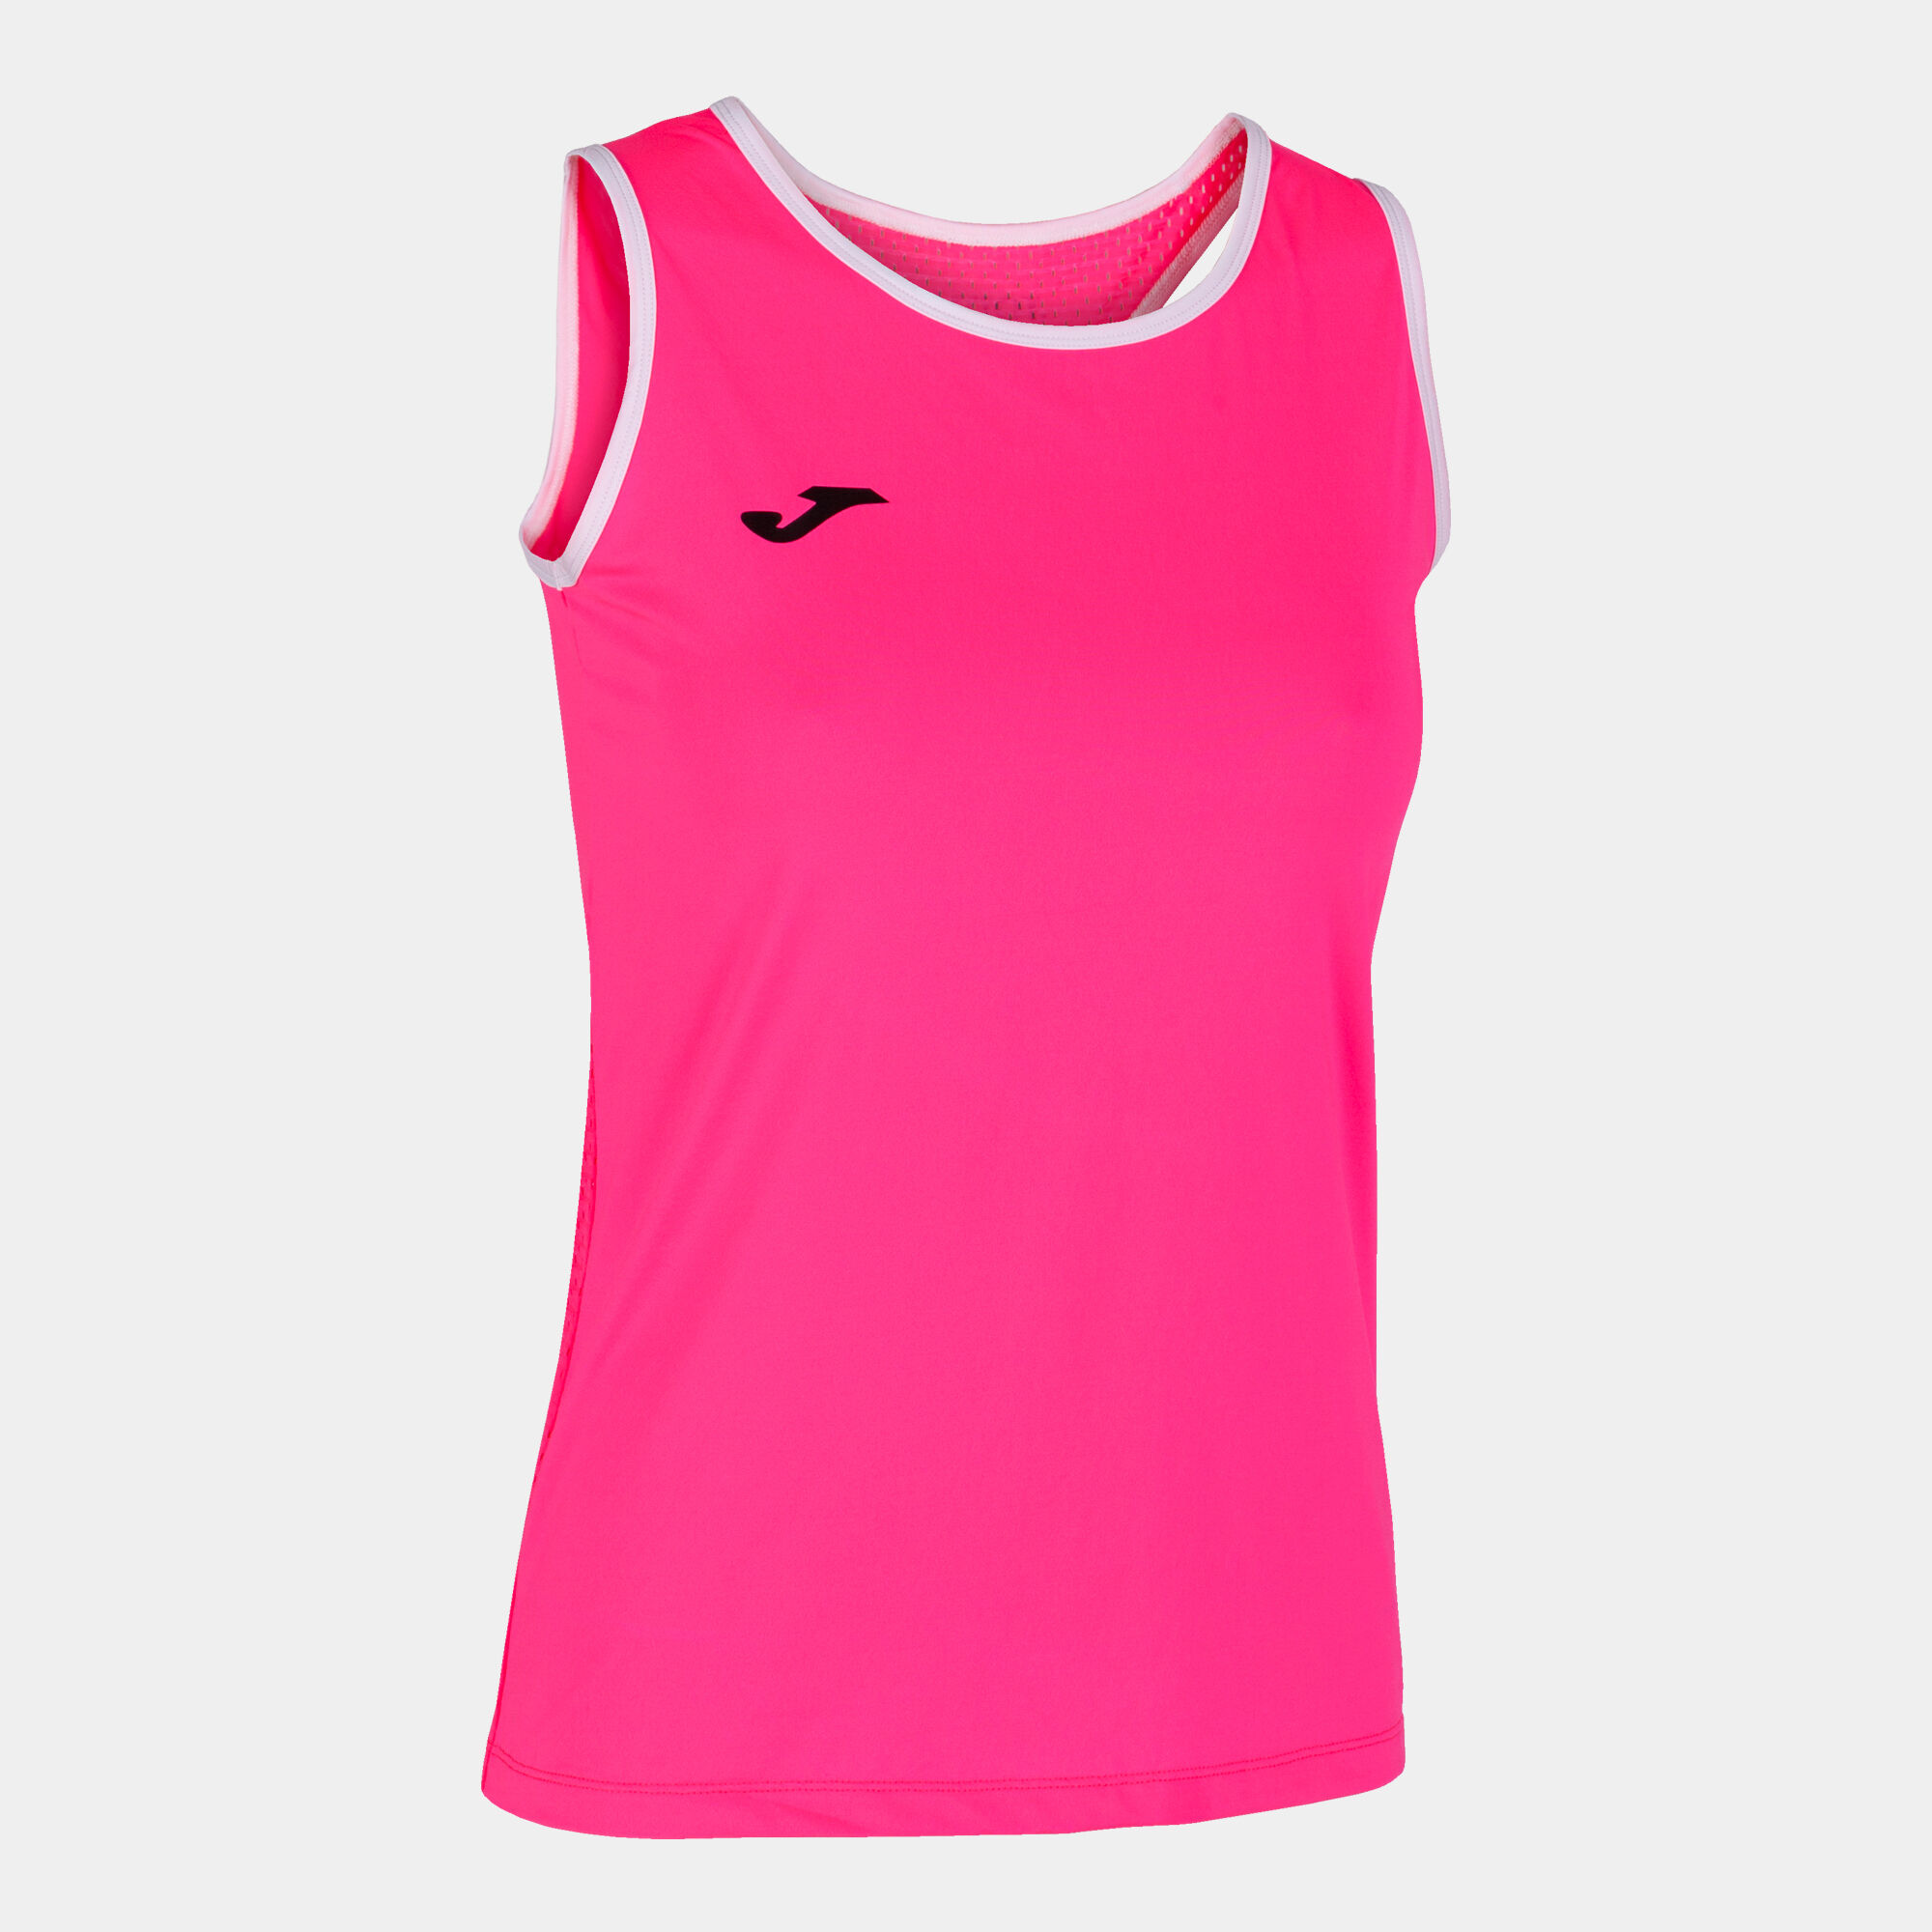 T-shirt de alça mulher Break rosa fluorescente